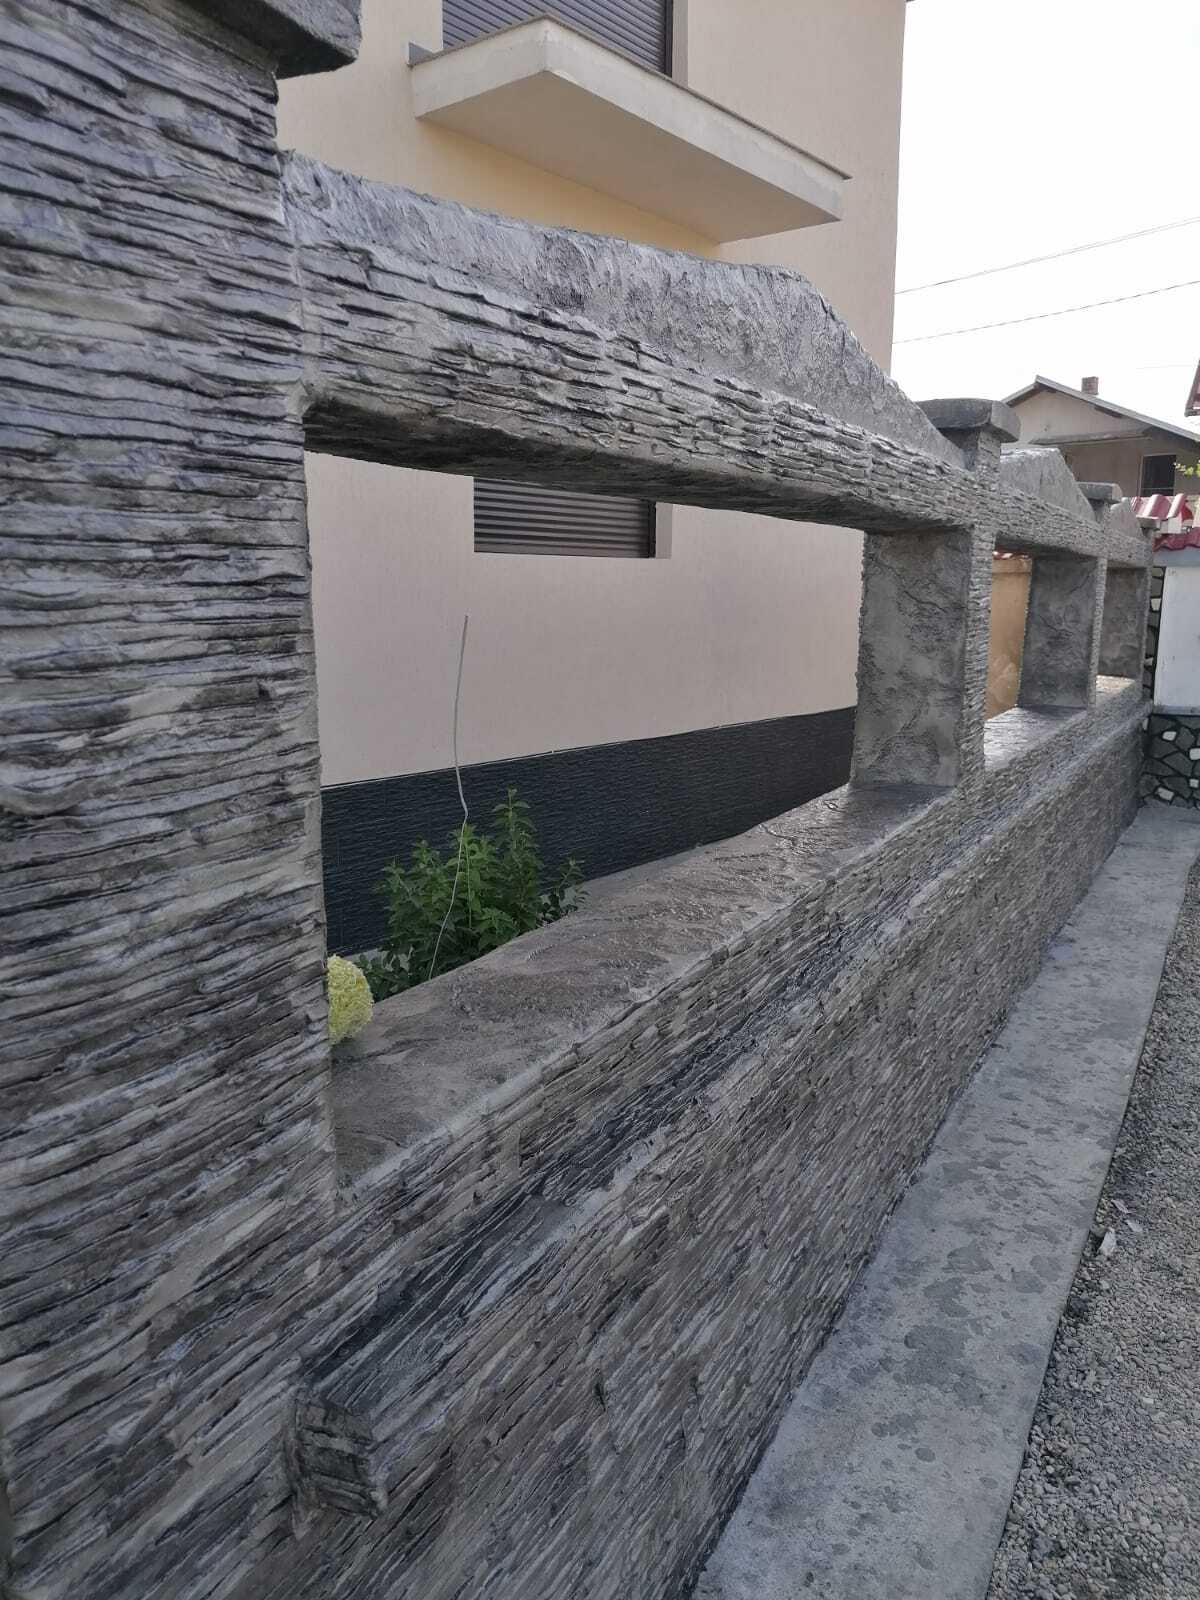 julkisivu talo vaakasuoraan painettu betoni kivijäljitelmä